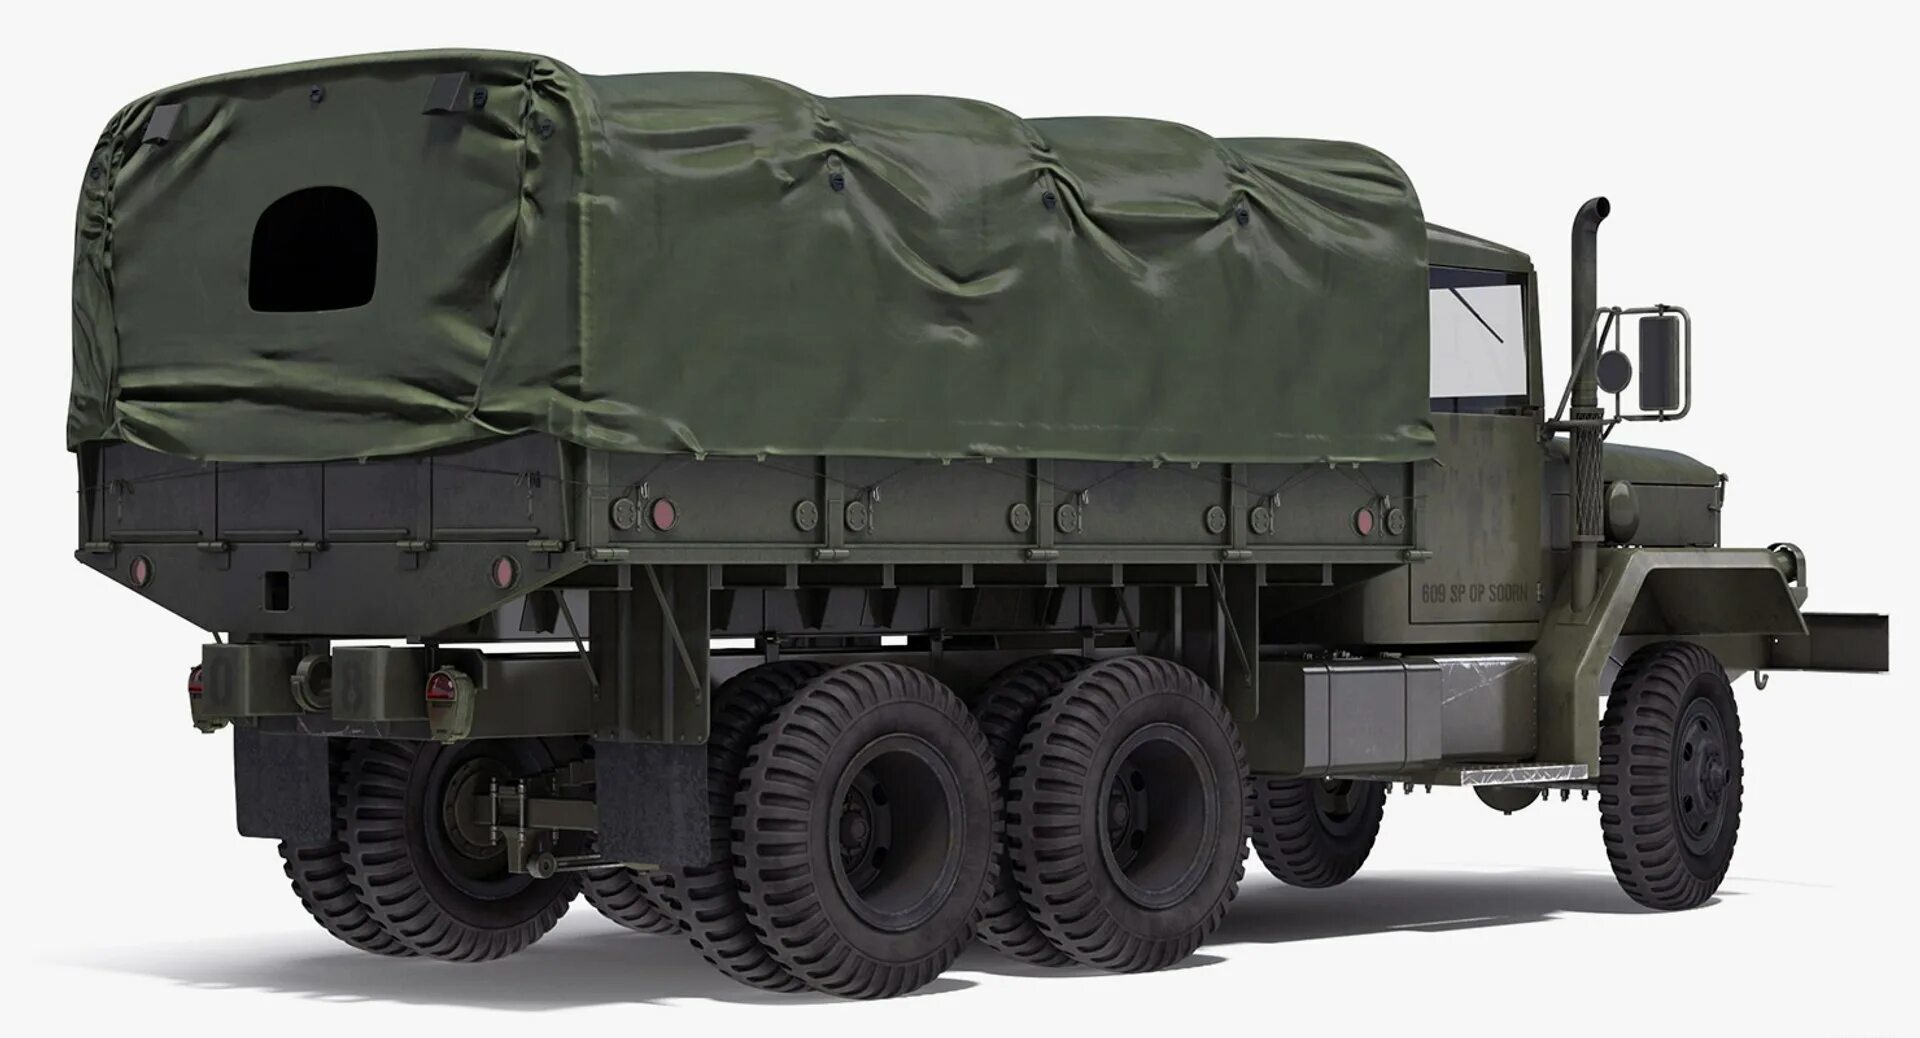 Автомобиль м 35. M35 Military Truck. М35 грузовик США. M35 медицинский грузовик. Американский грузовик m35.